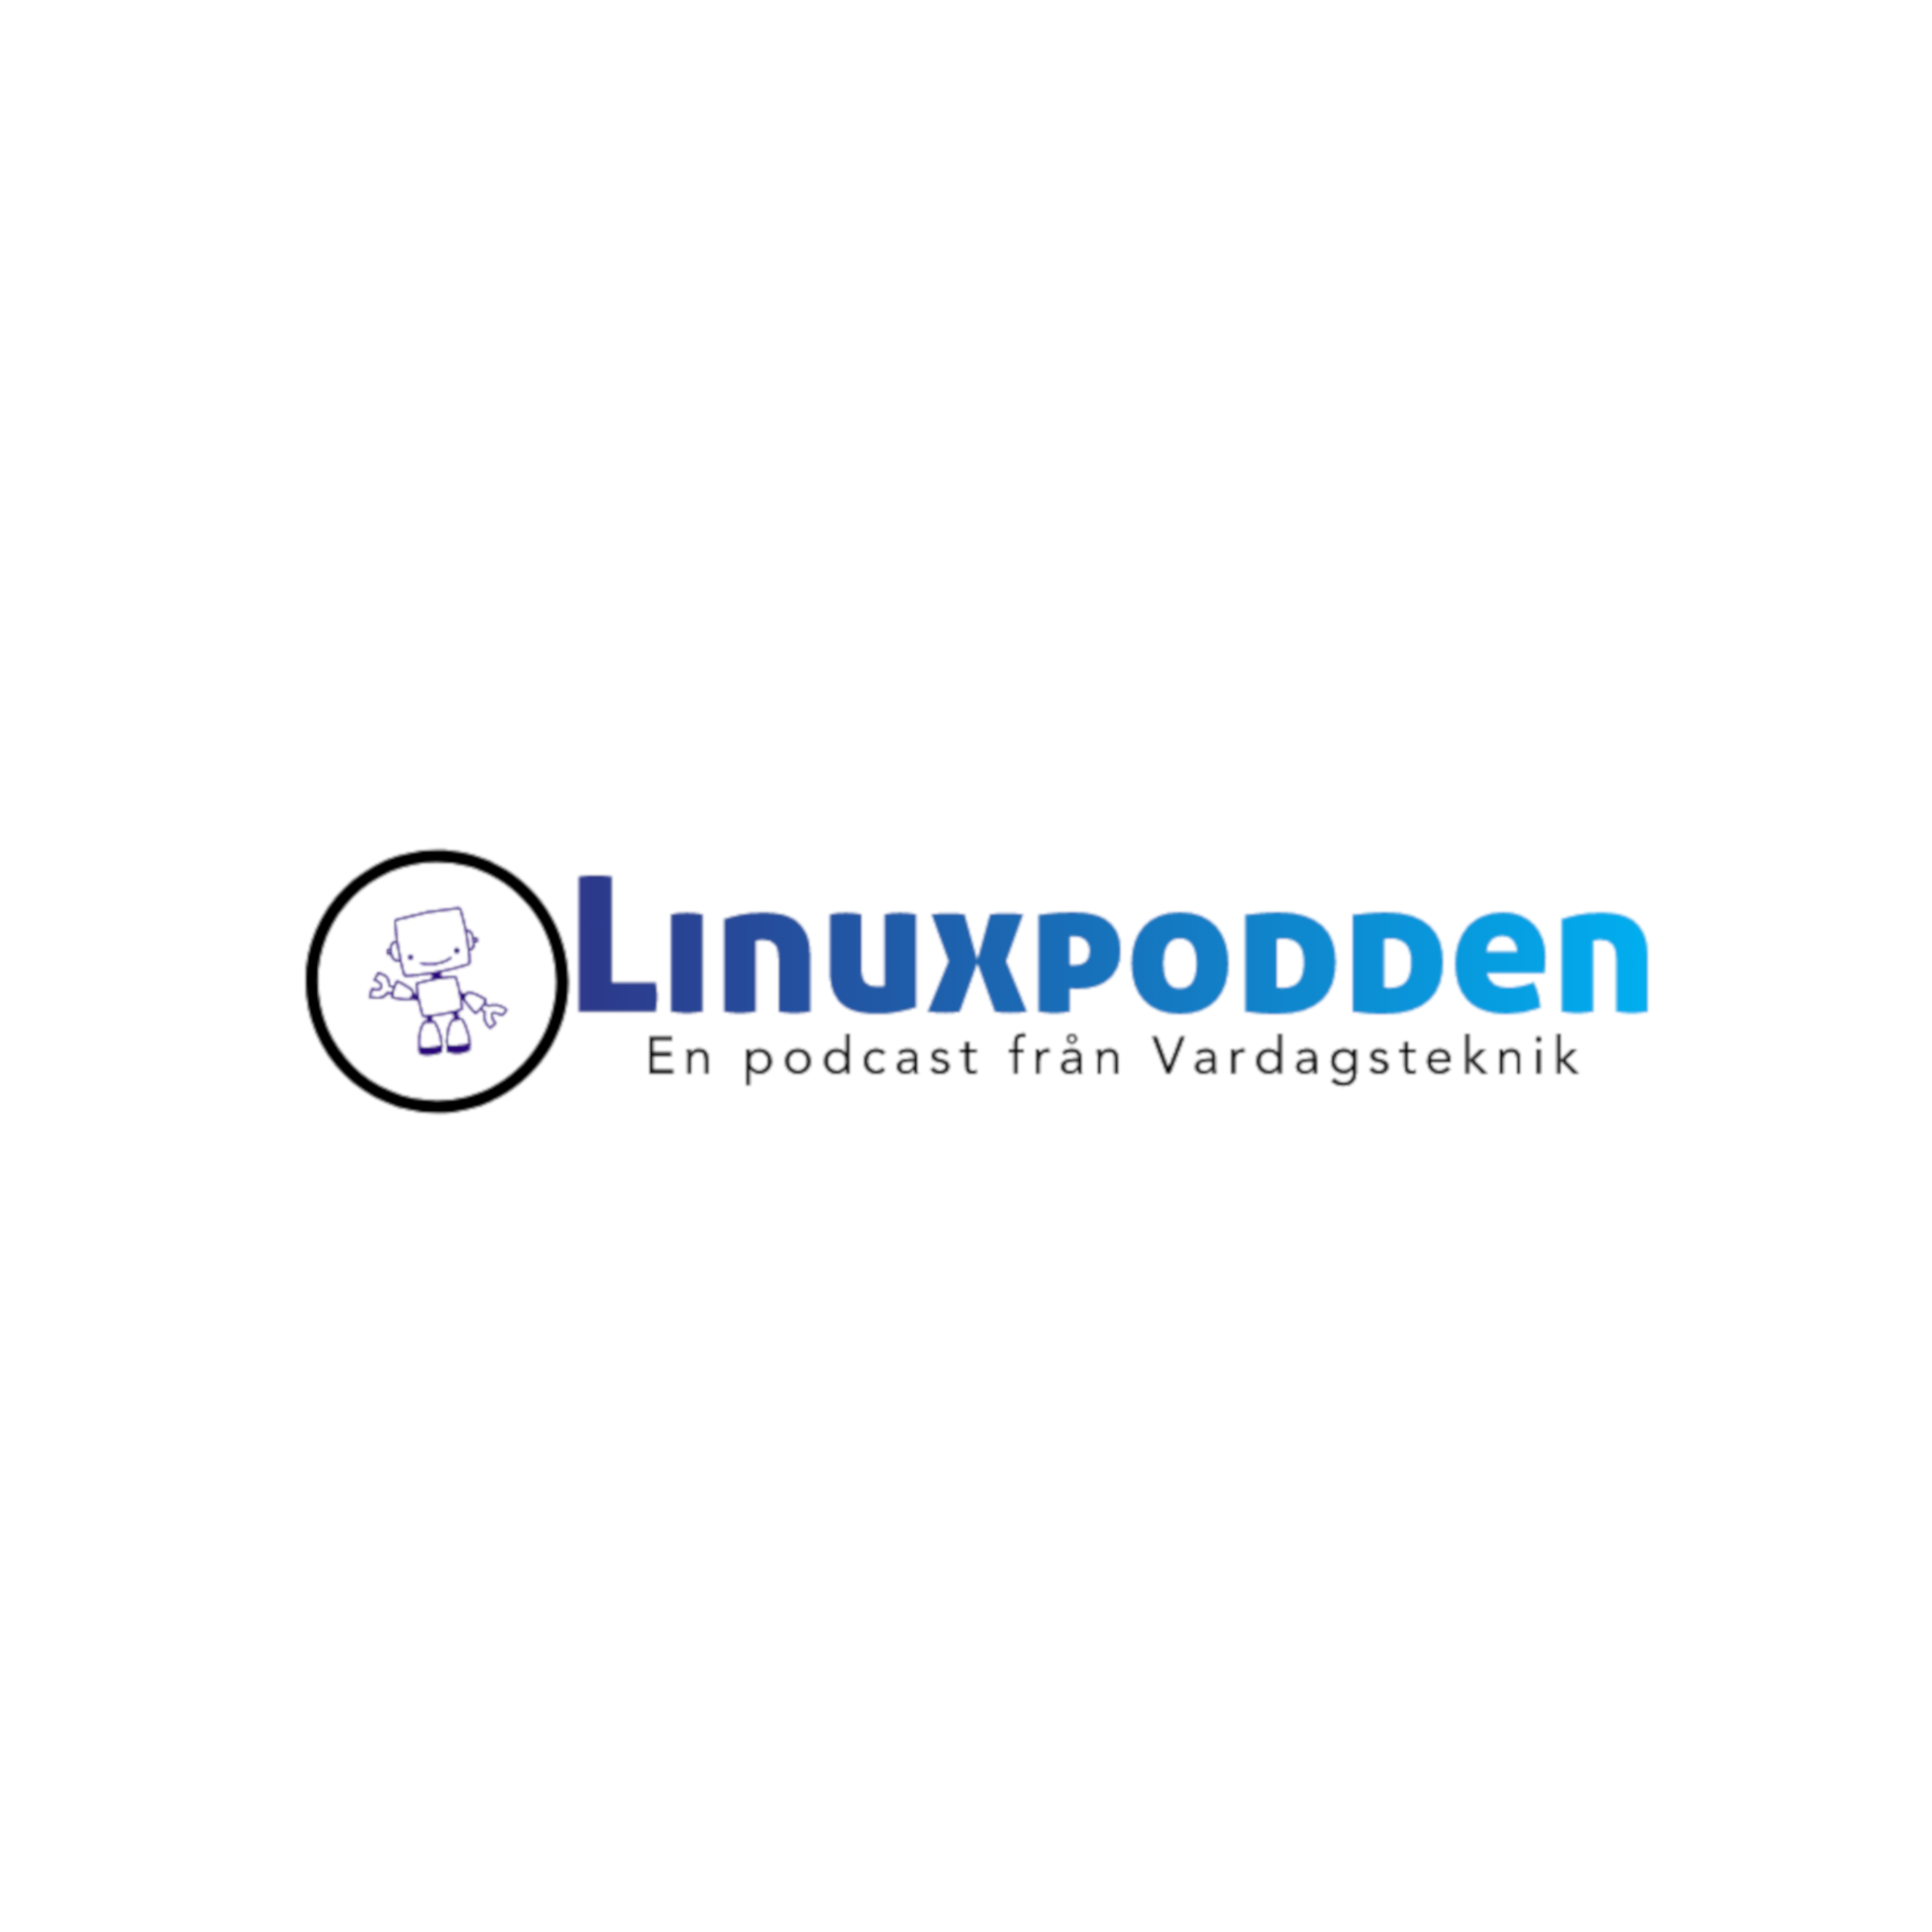 Linuxpodden